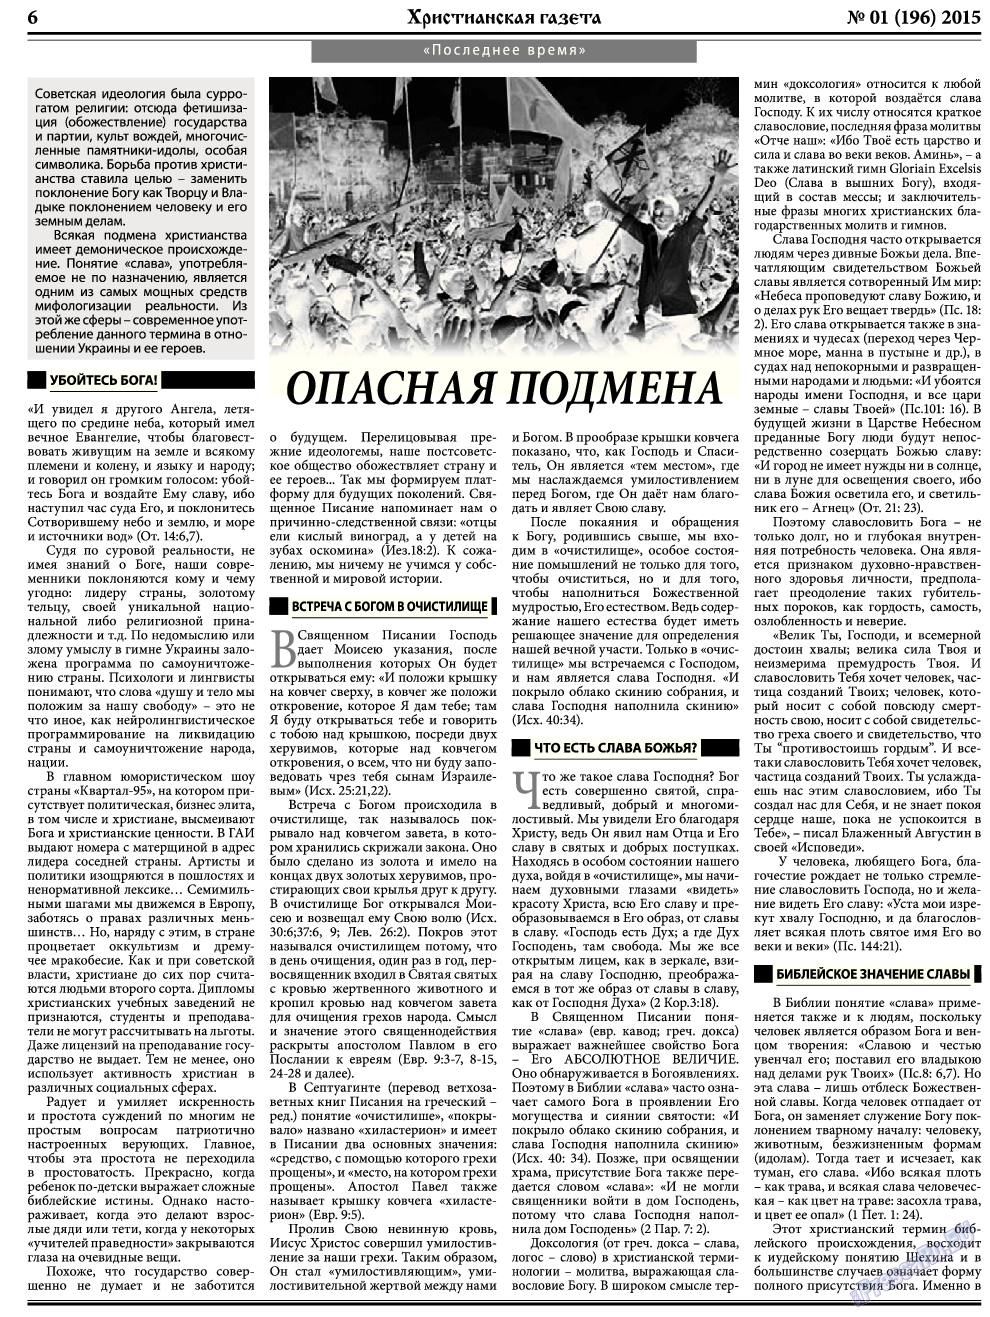 Христианская газета, газета. 2015 №1 стр.6